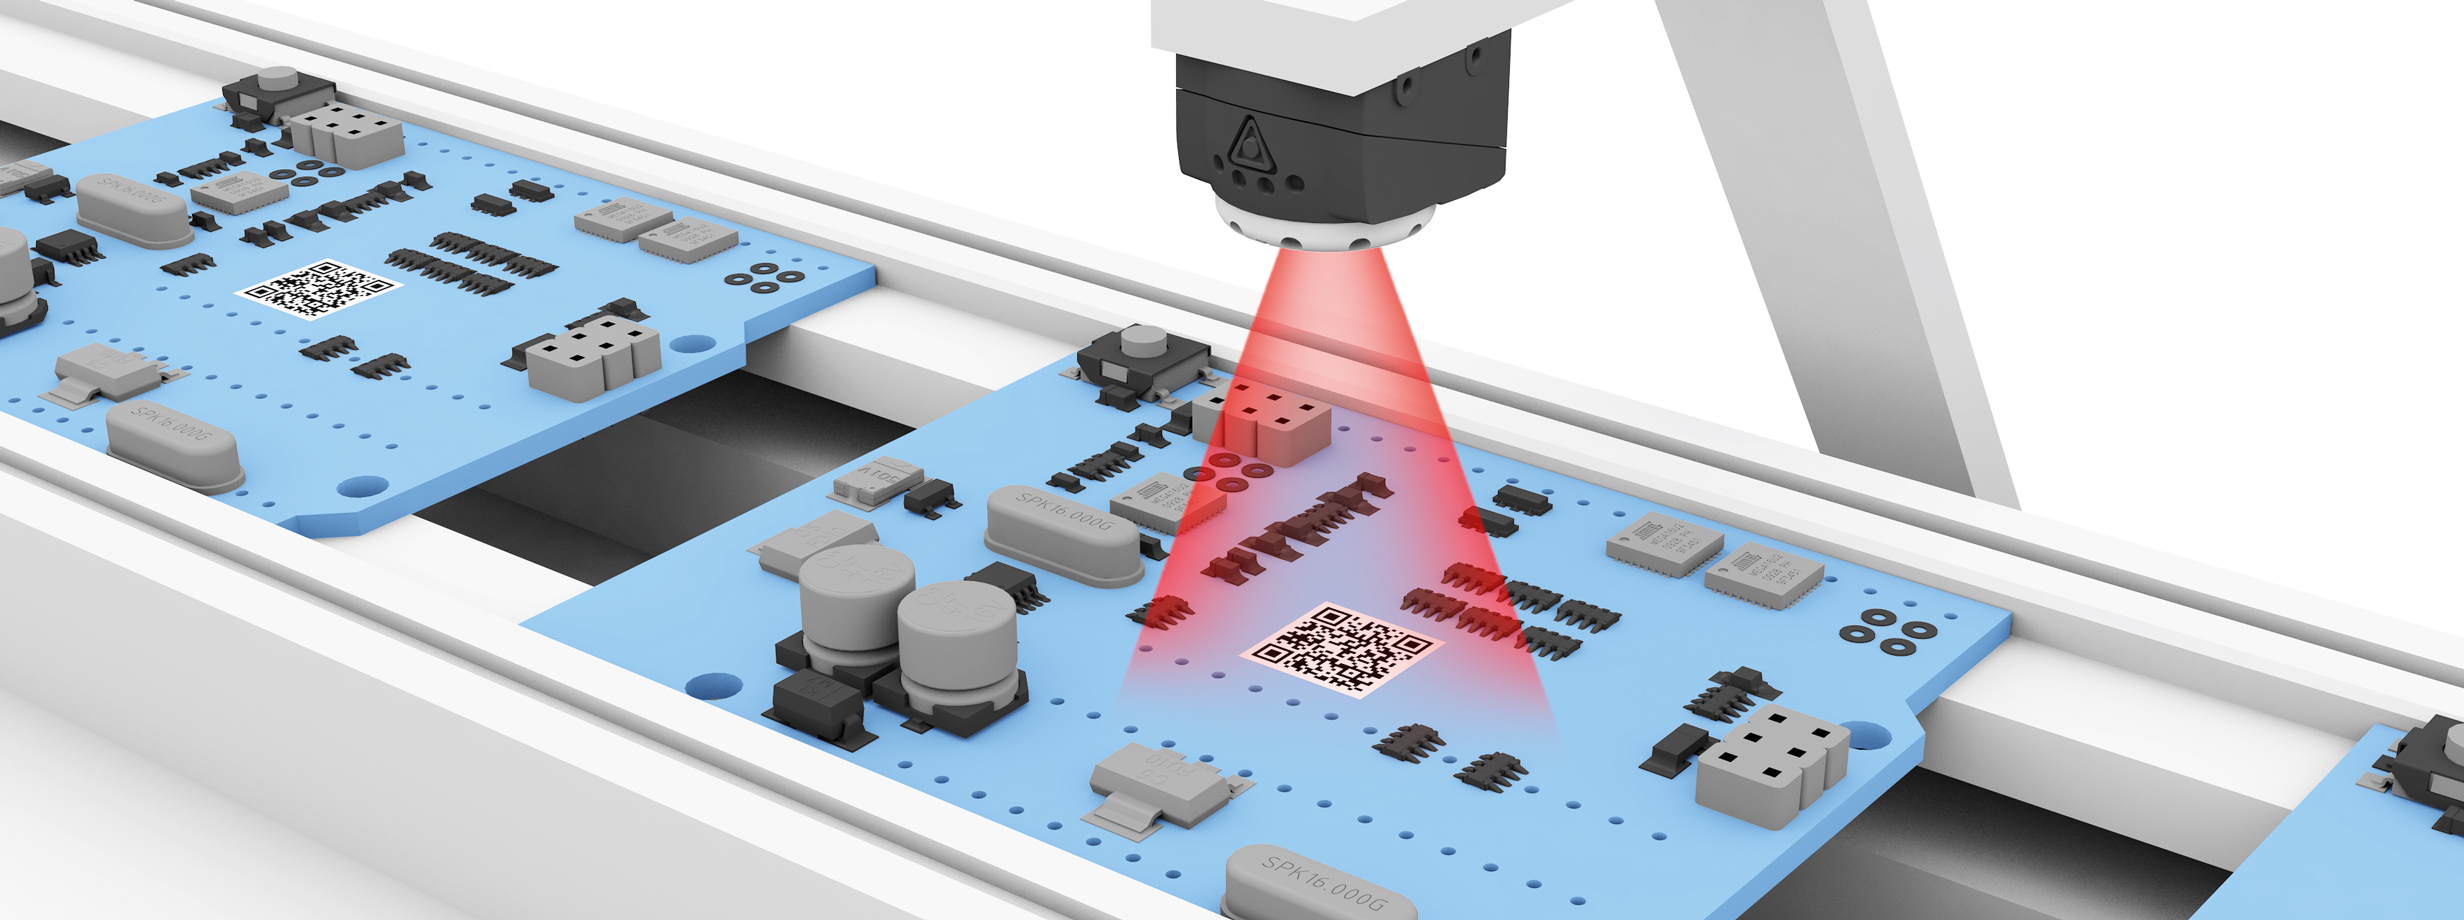 Identificar las placas de circuito impreso image